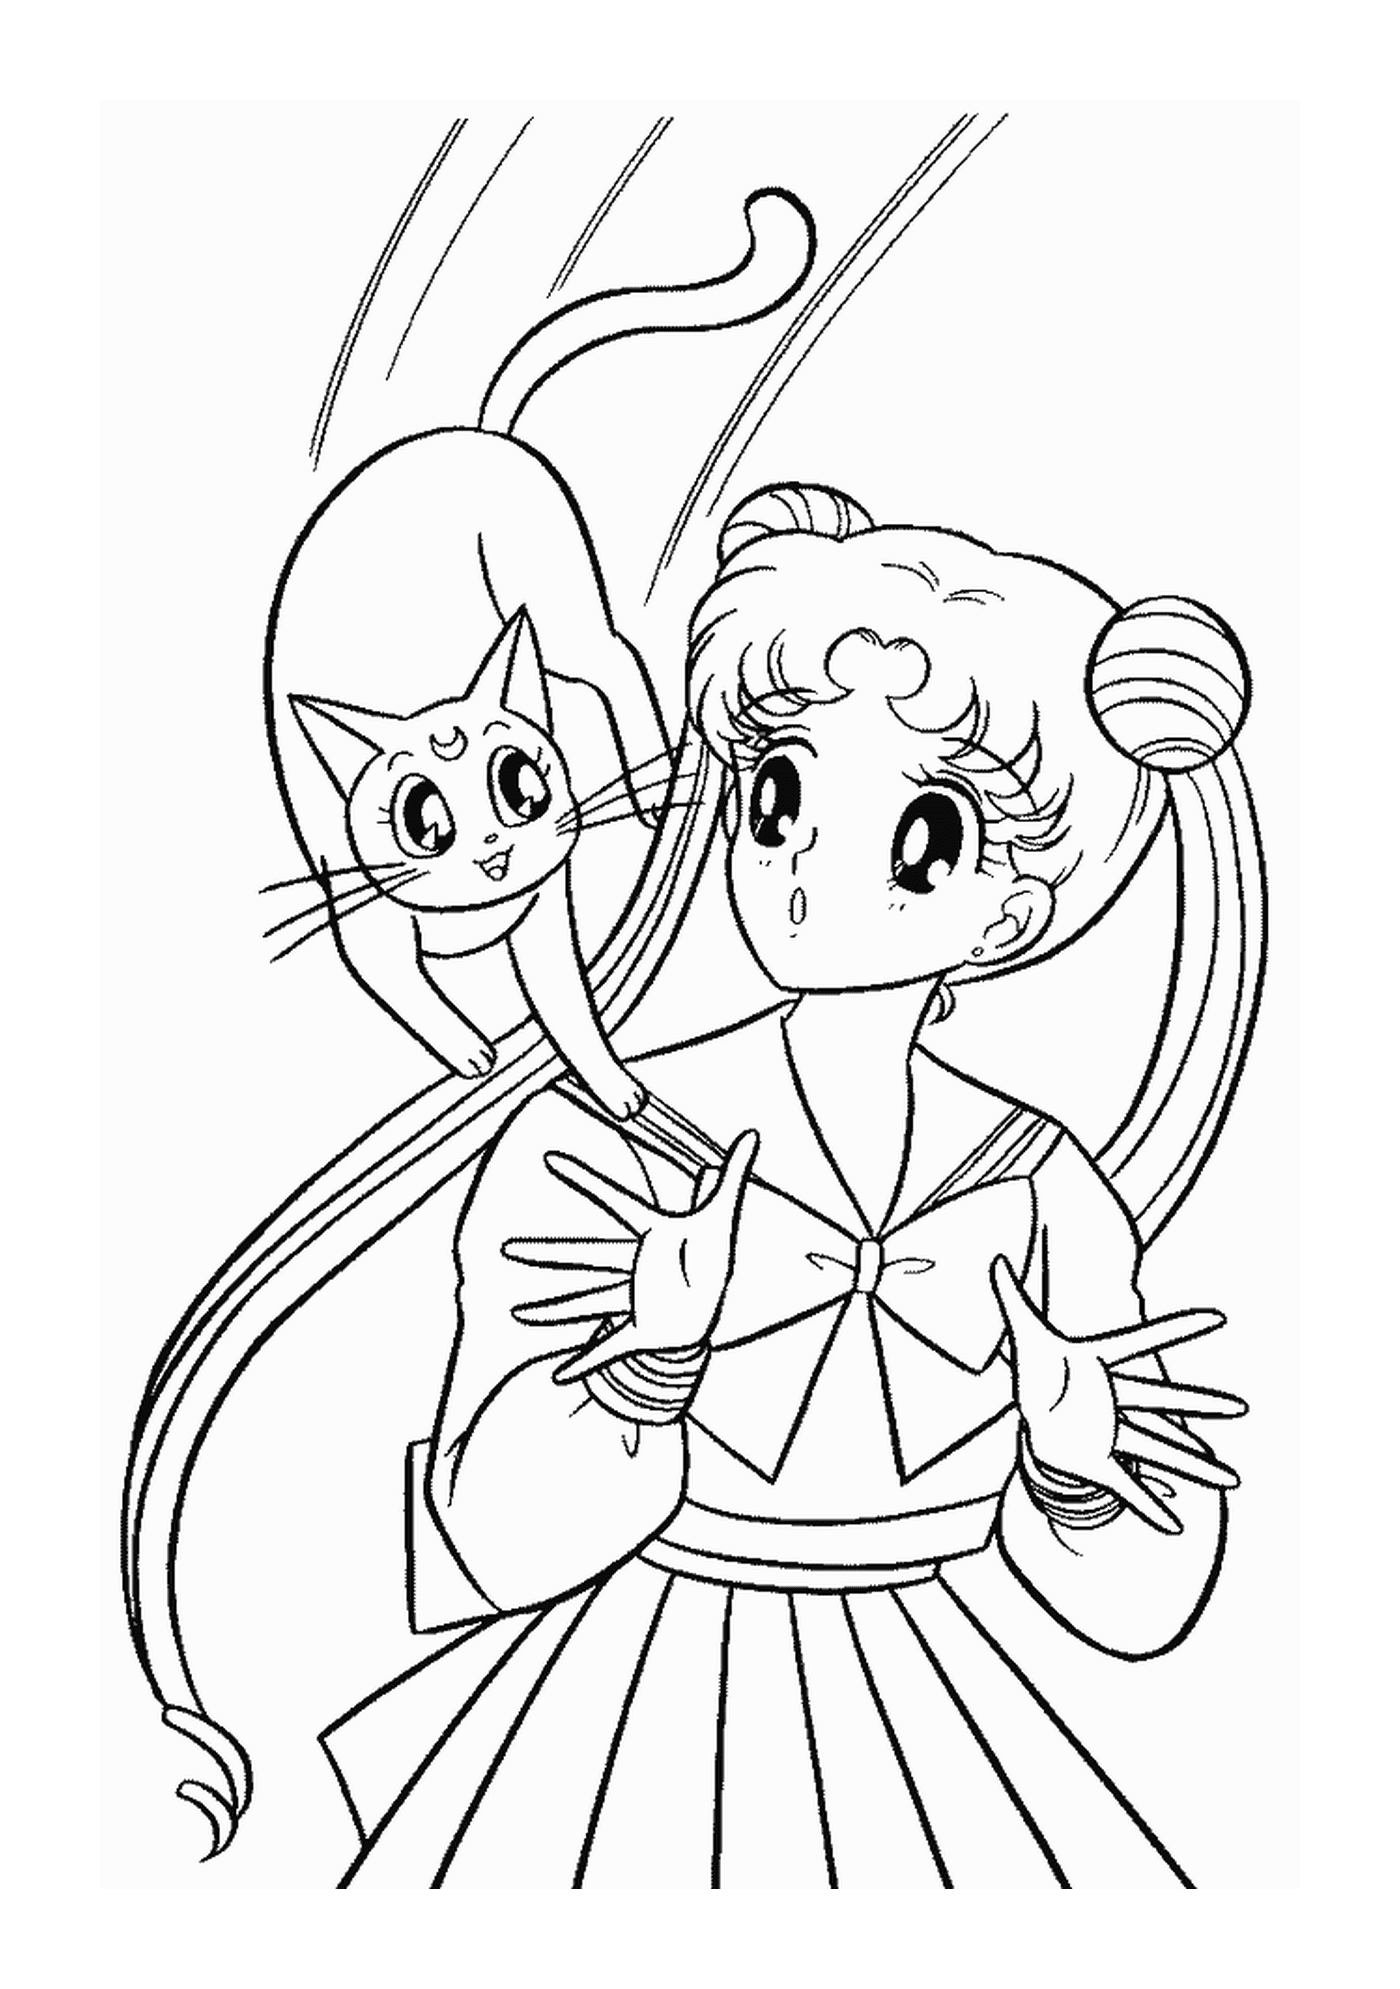  Ein Charakter von Sailor Moon und eine Katze 